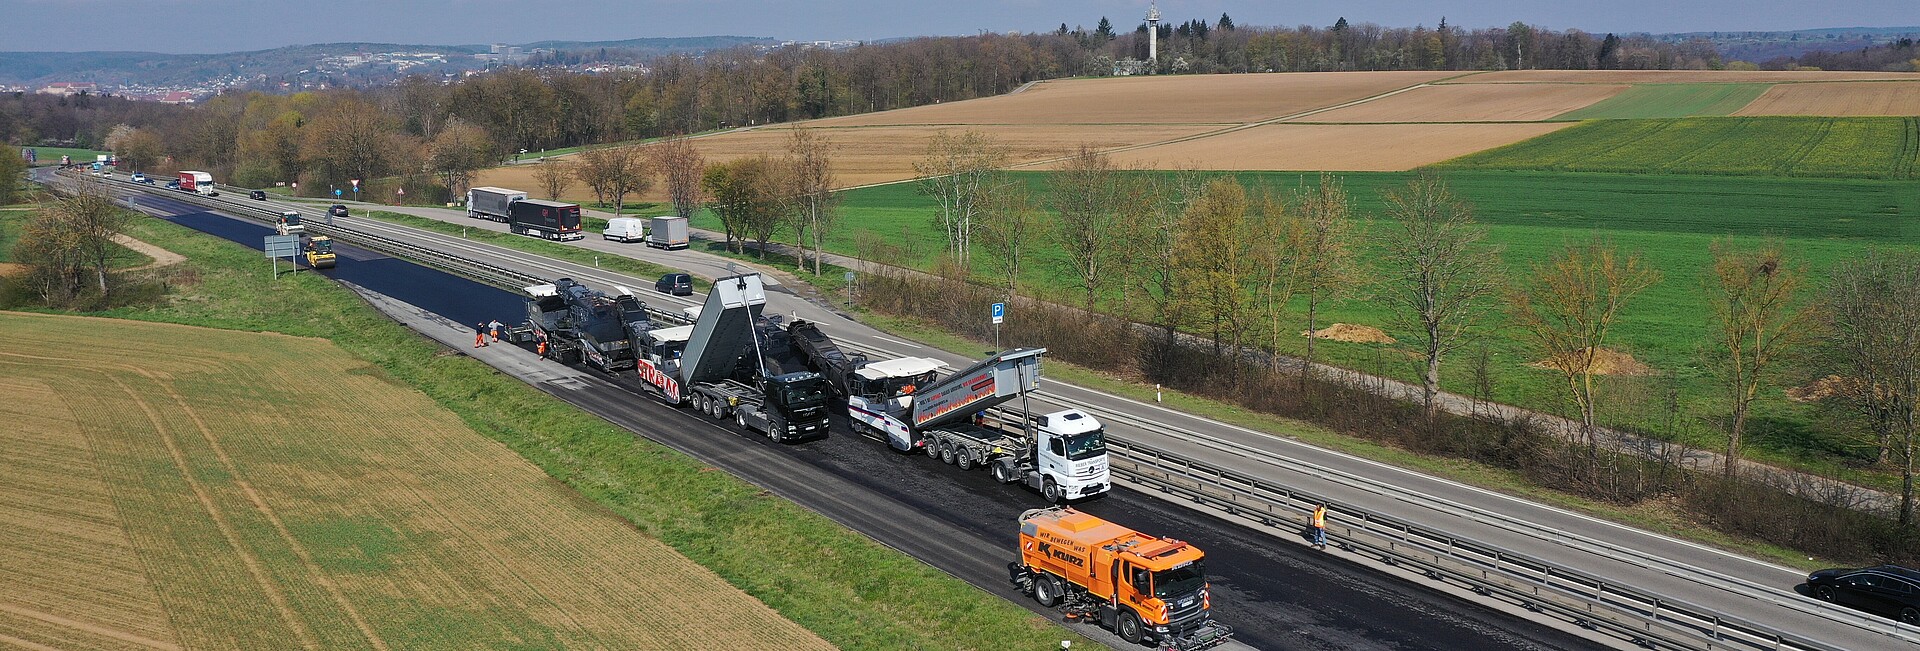 Fahrbahndeckenerneuerung auf der B 28 zwischen Tübingen und Reutlingen: Einbauzug für den Kompaktasphalt